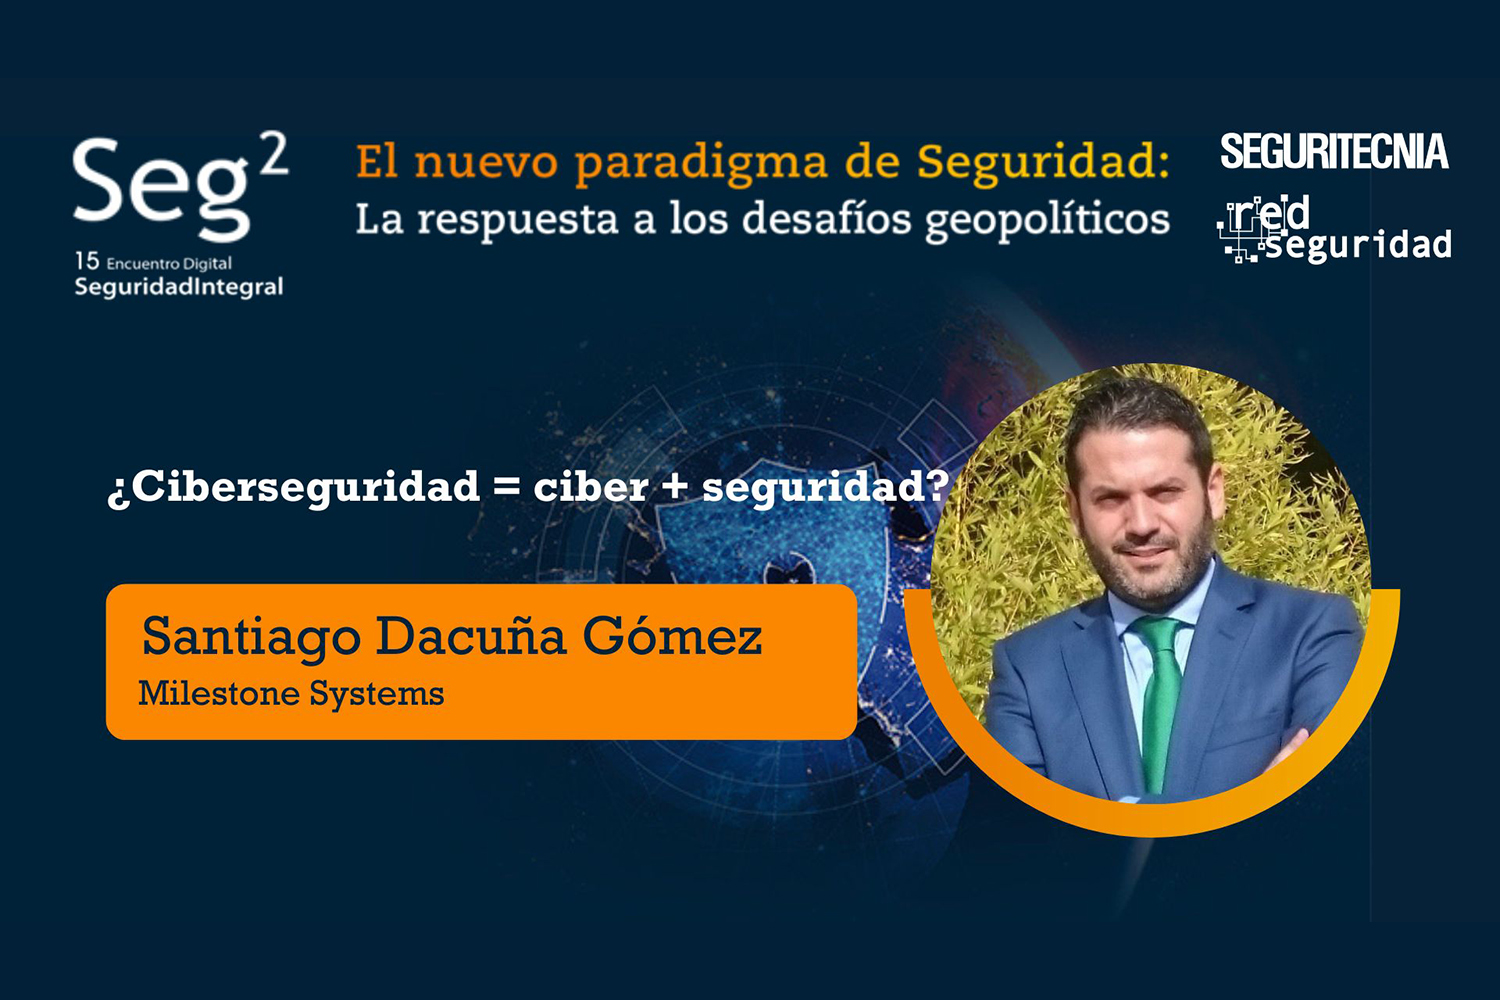 Santiago Dacuña Gómez (Milestone Systems): ¿ciberseguridad=ciber+seguridad?